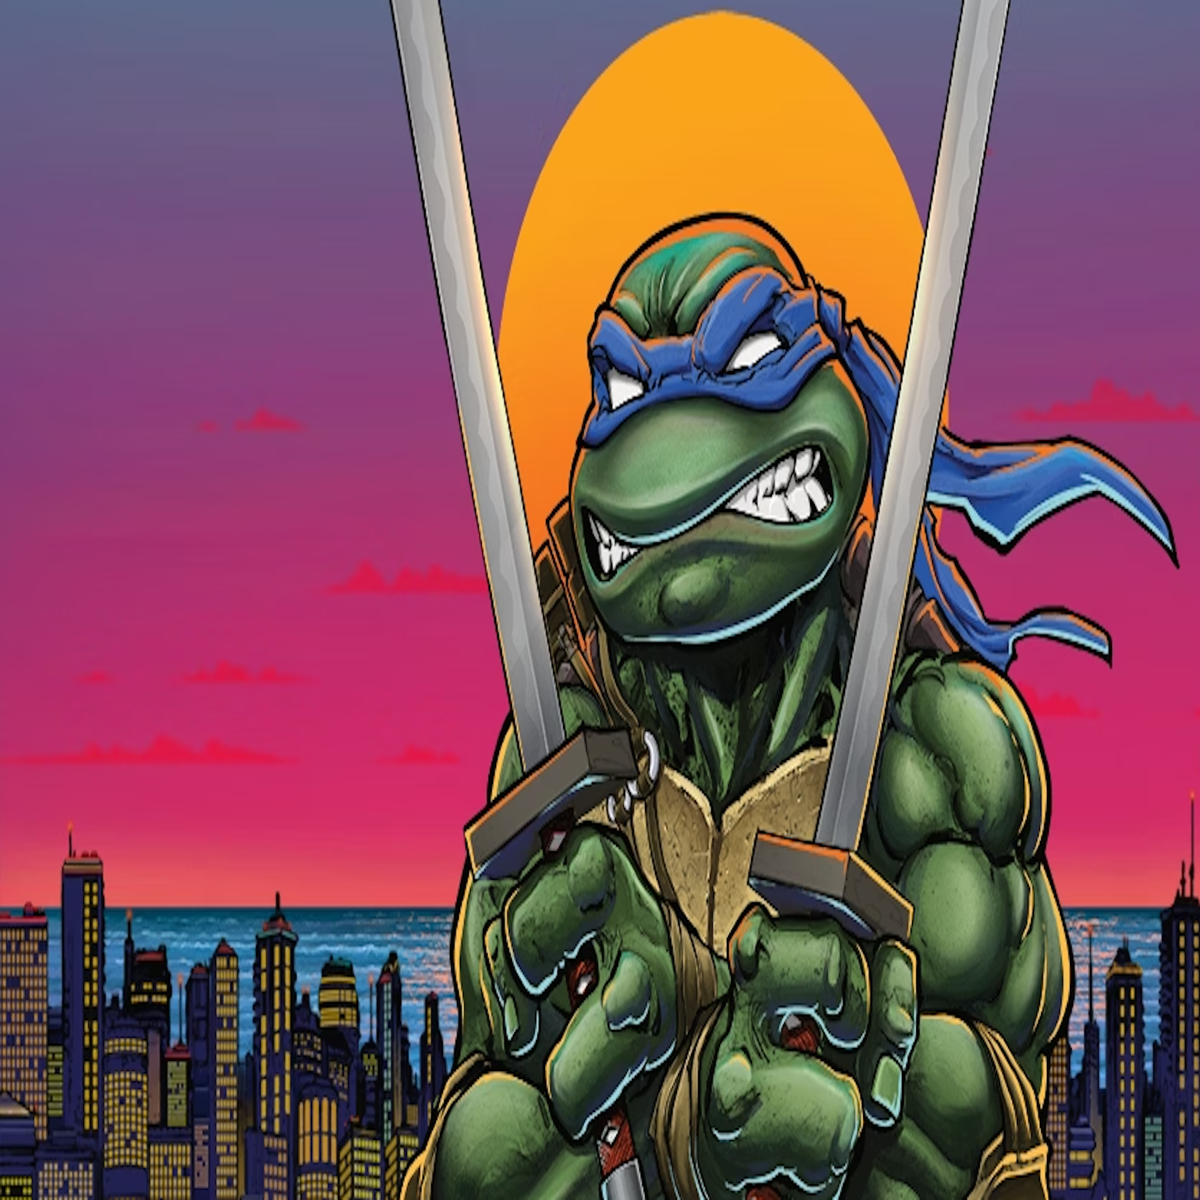 Teenage Mutant Ninja Turtles RPG reprint revives a 1980s tabletop oddity